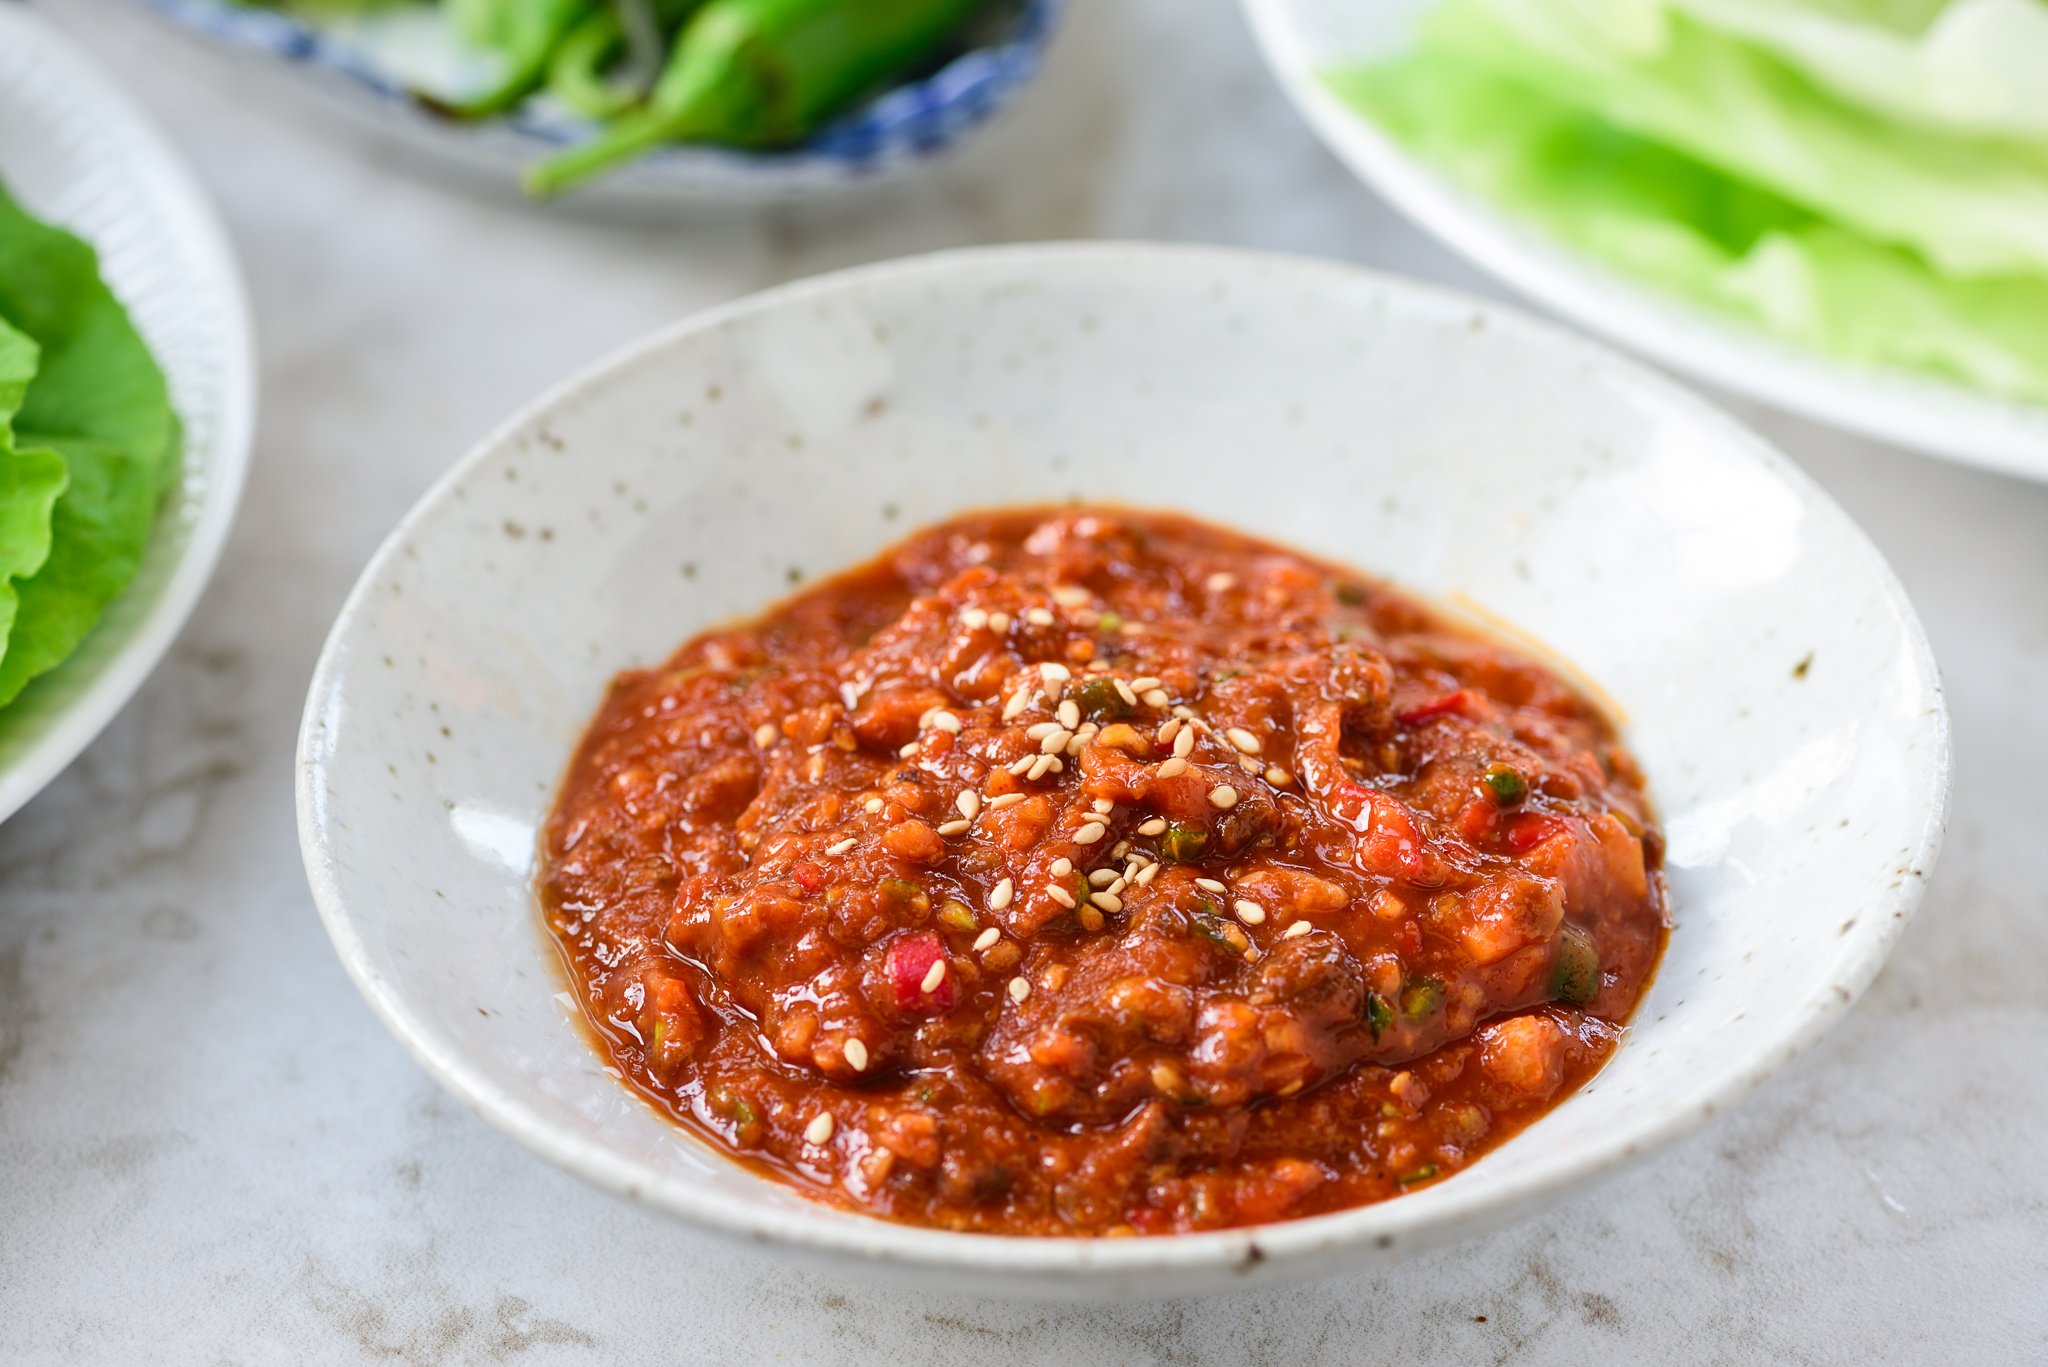 DSC1848 - Ssamjang (Sauce for Korean Lettuce Wraps)